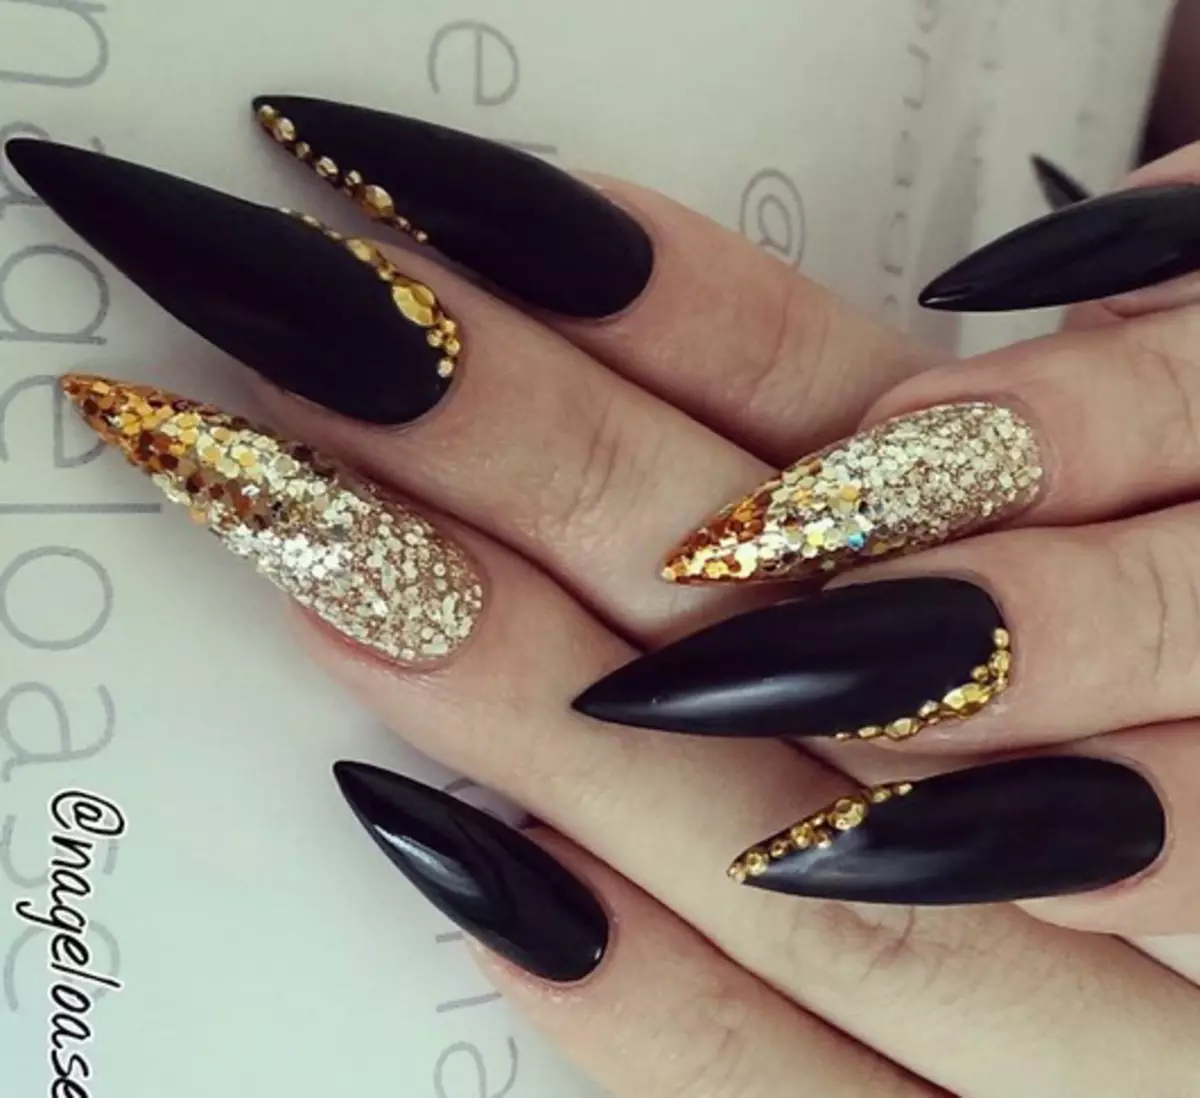 Ногти стилеты черные с золотом